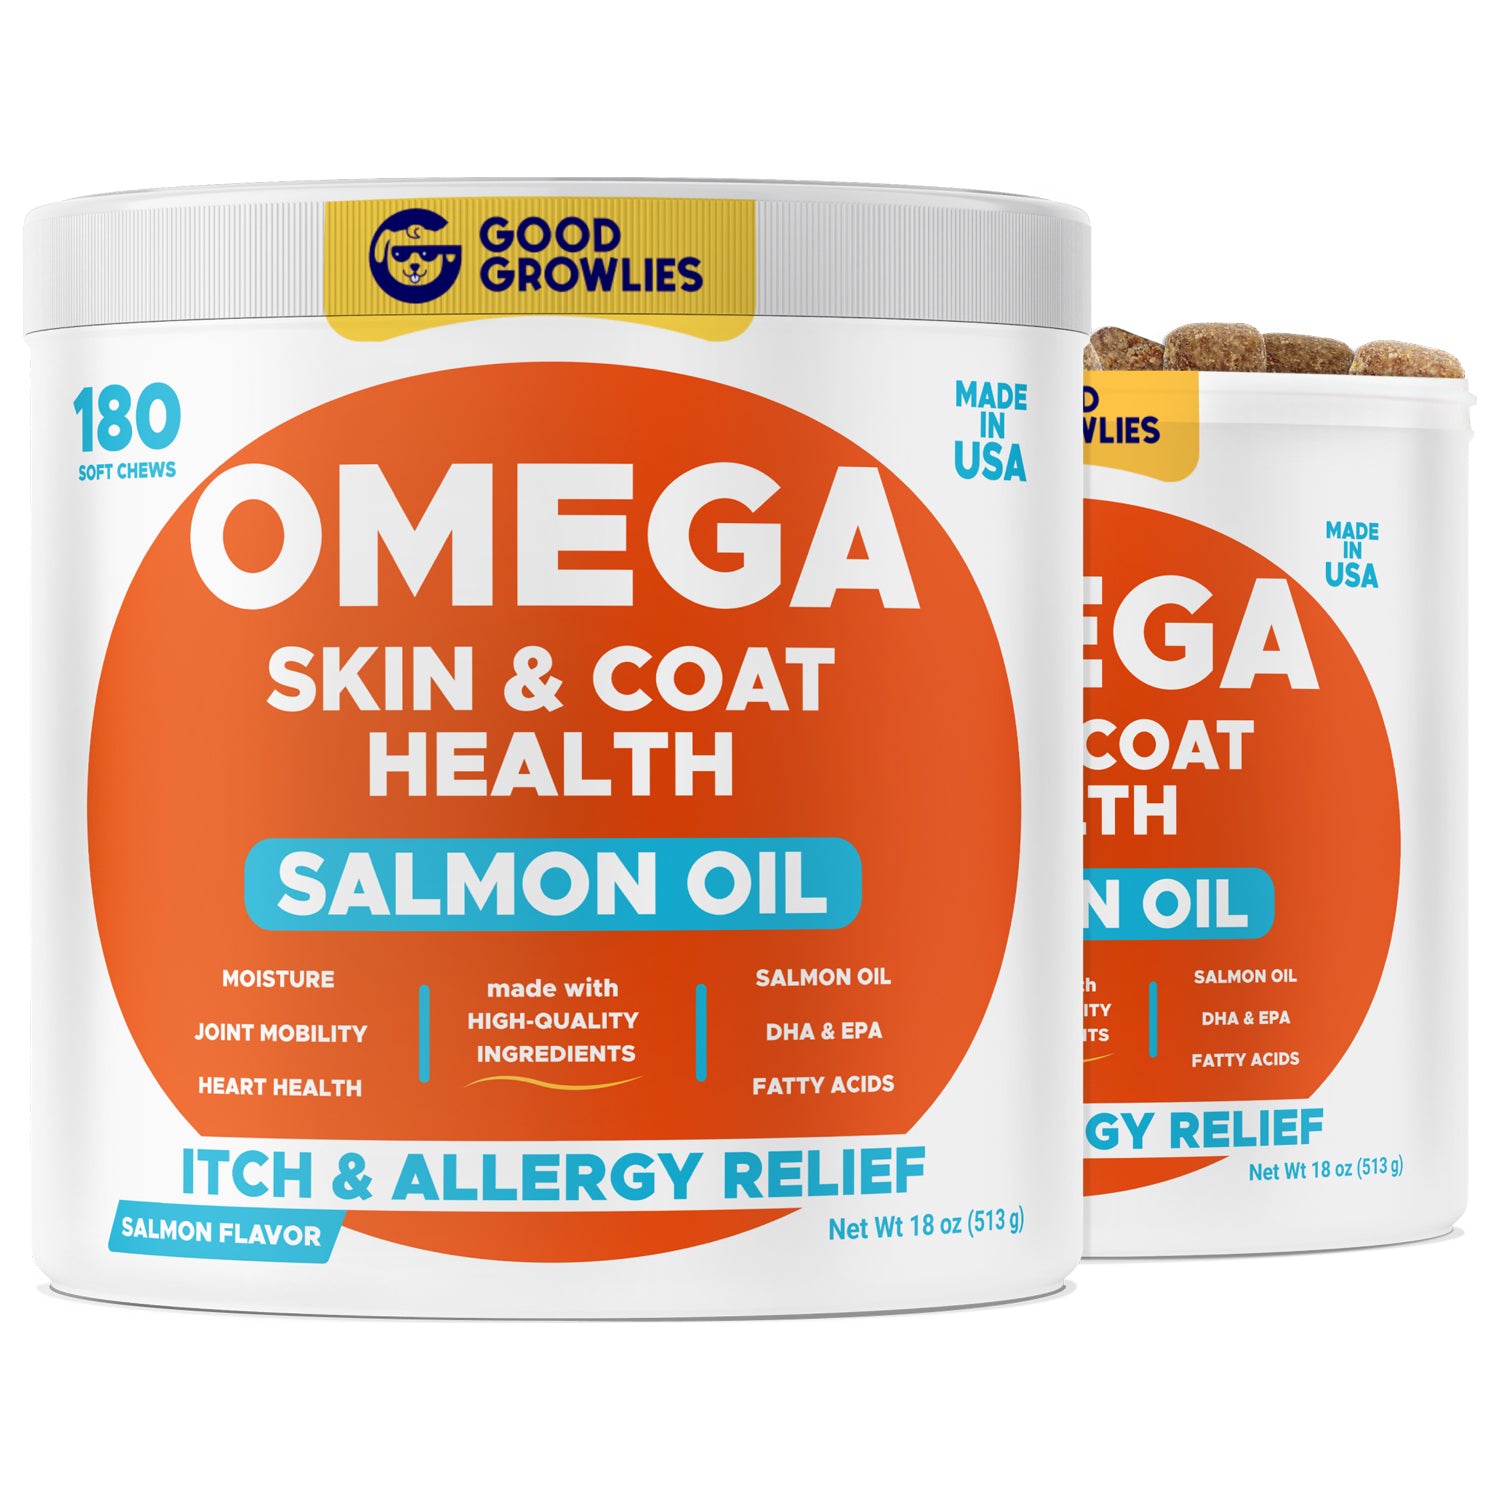 Omega Skin & Coat Health